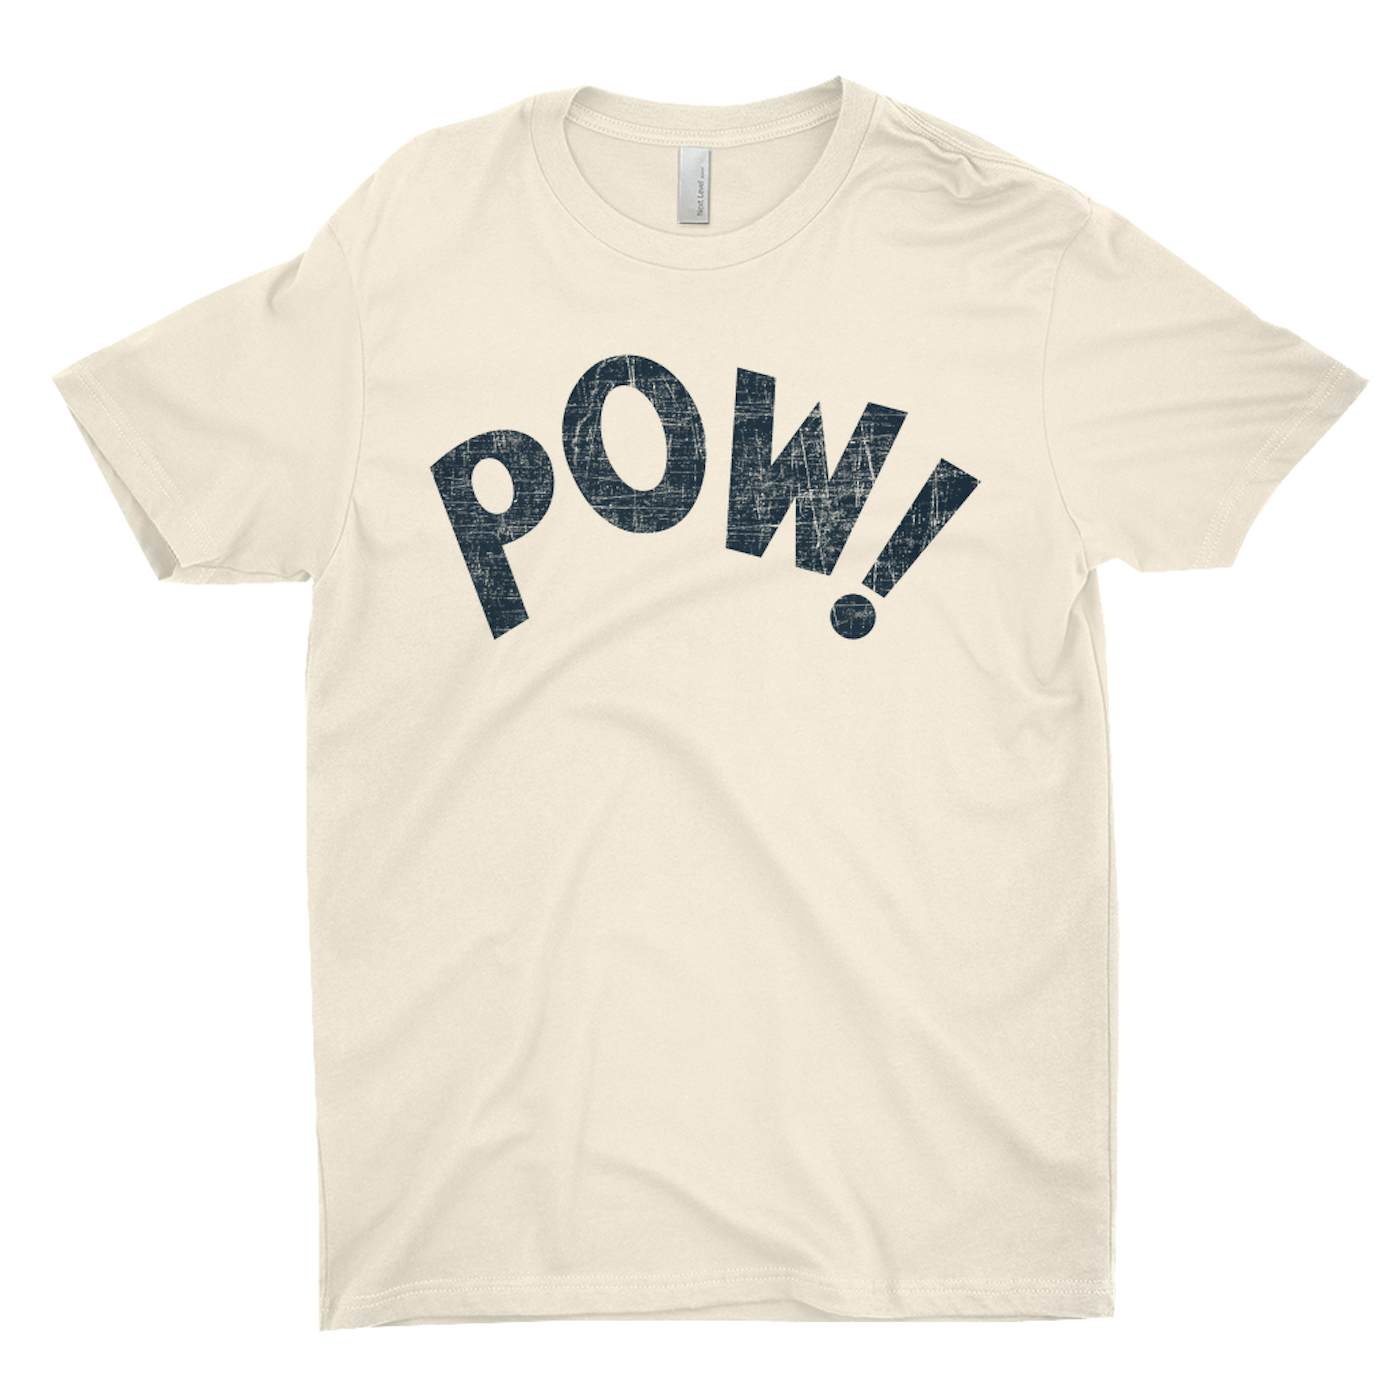 POW Net T-Shirt